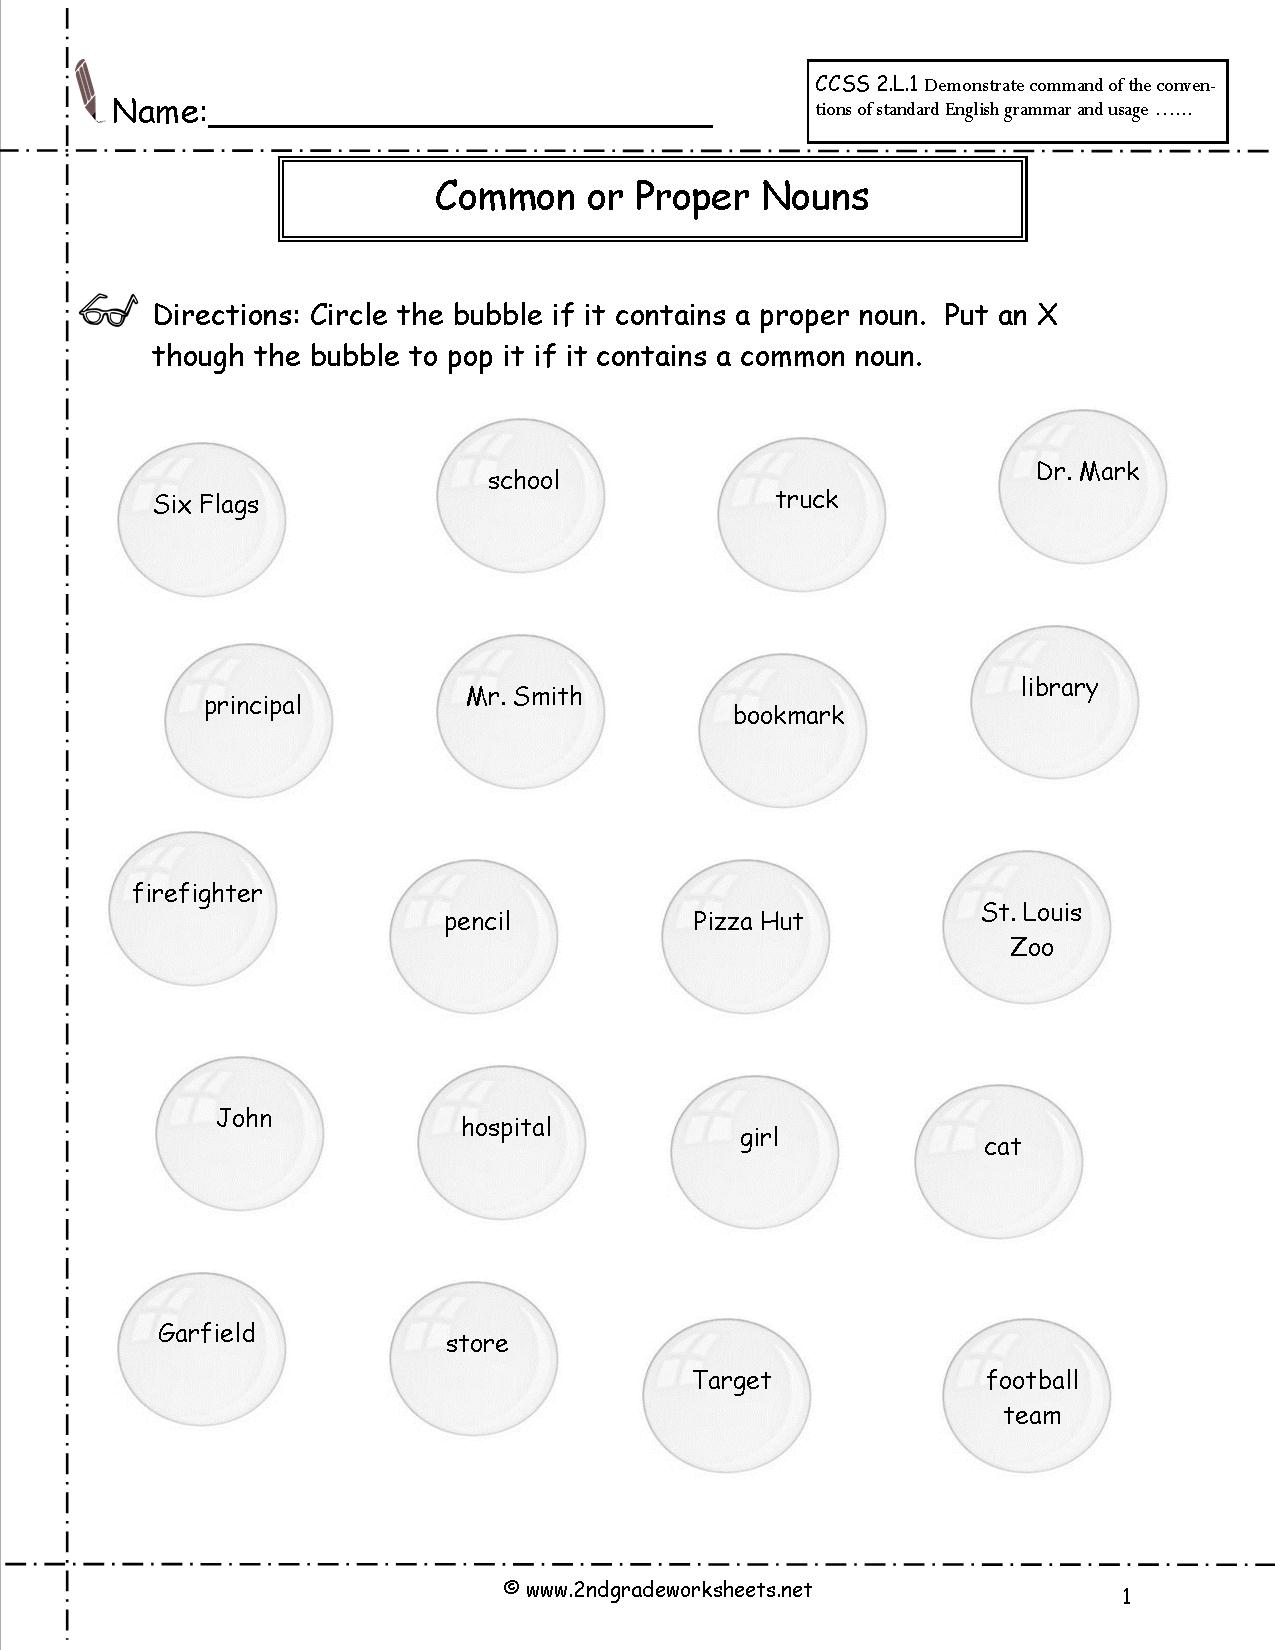 19-best-images-of-proper-noun-worksheets-grade-1-nouns-worksheets-2nd-grade-common-and-proper